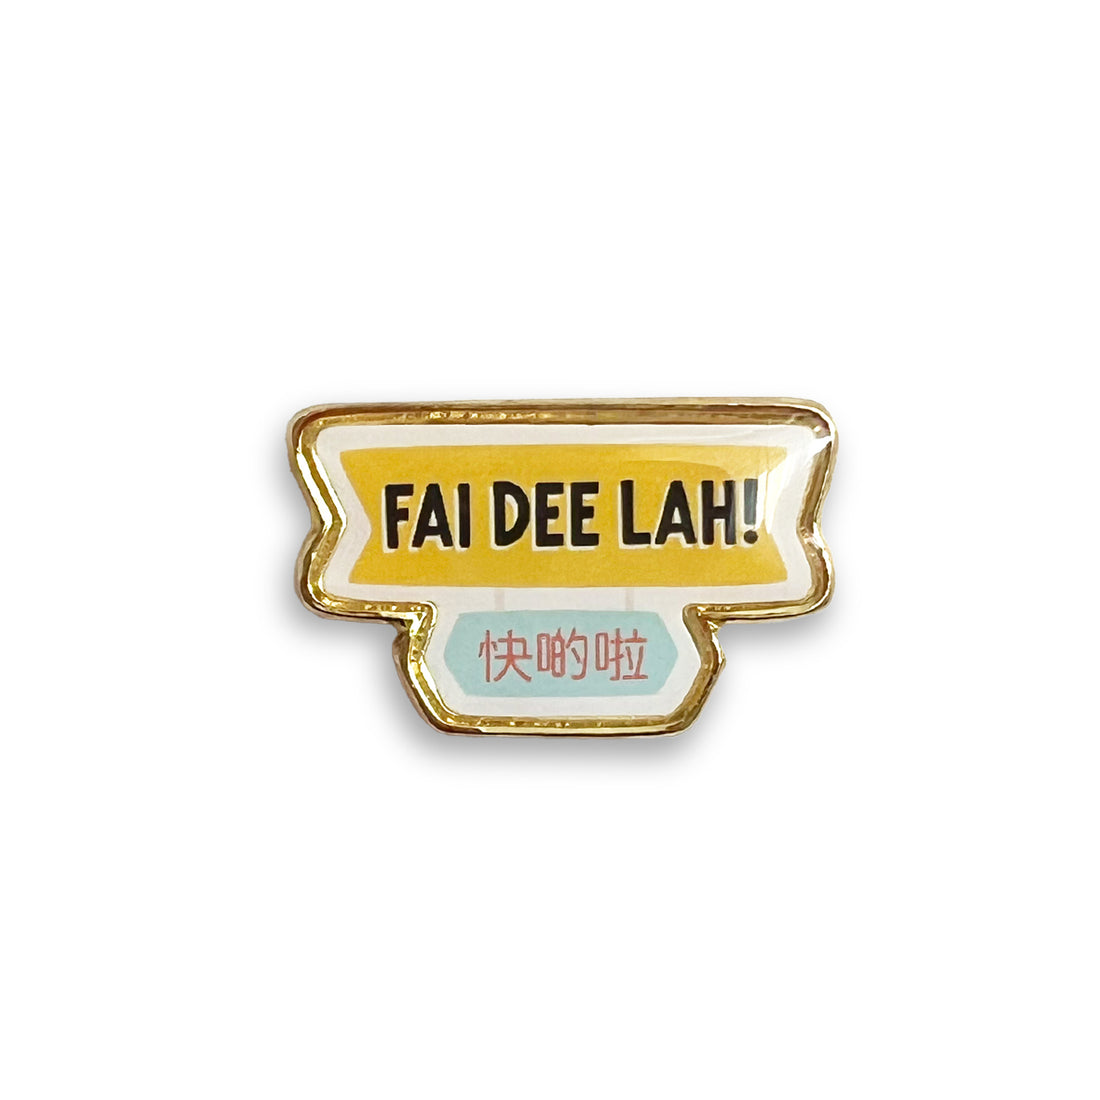 Fai dee lah (快啲啦) lapel pin by I&